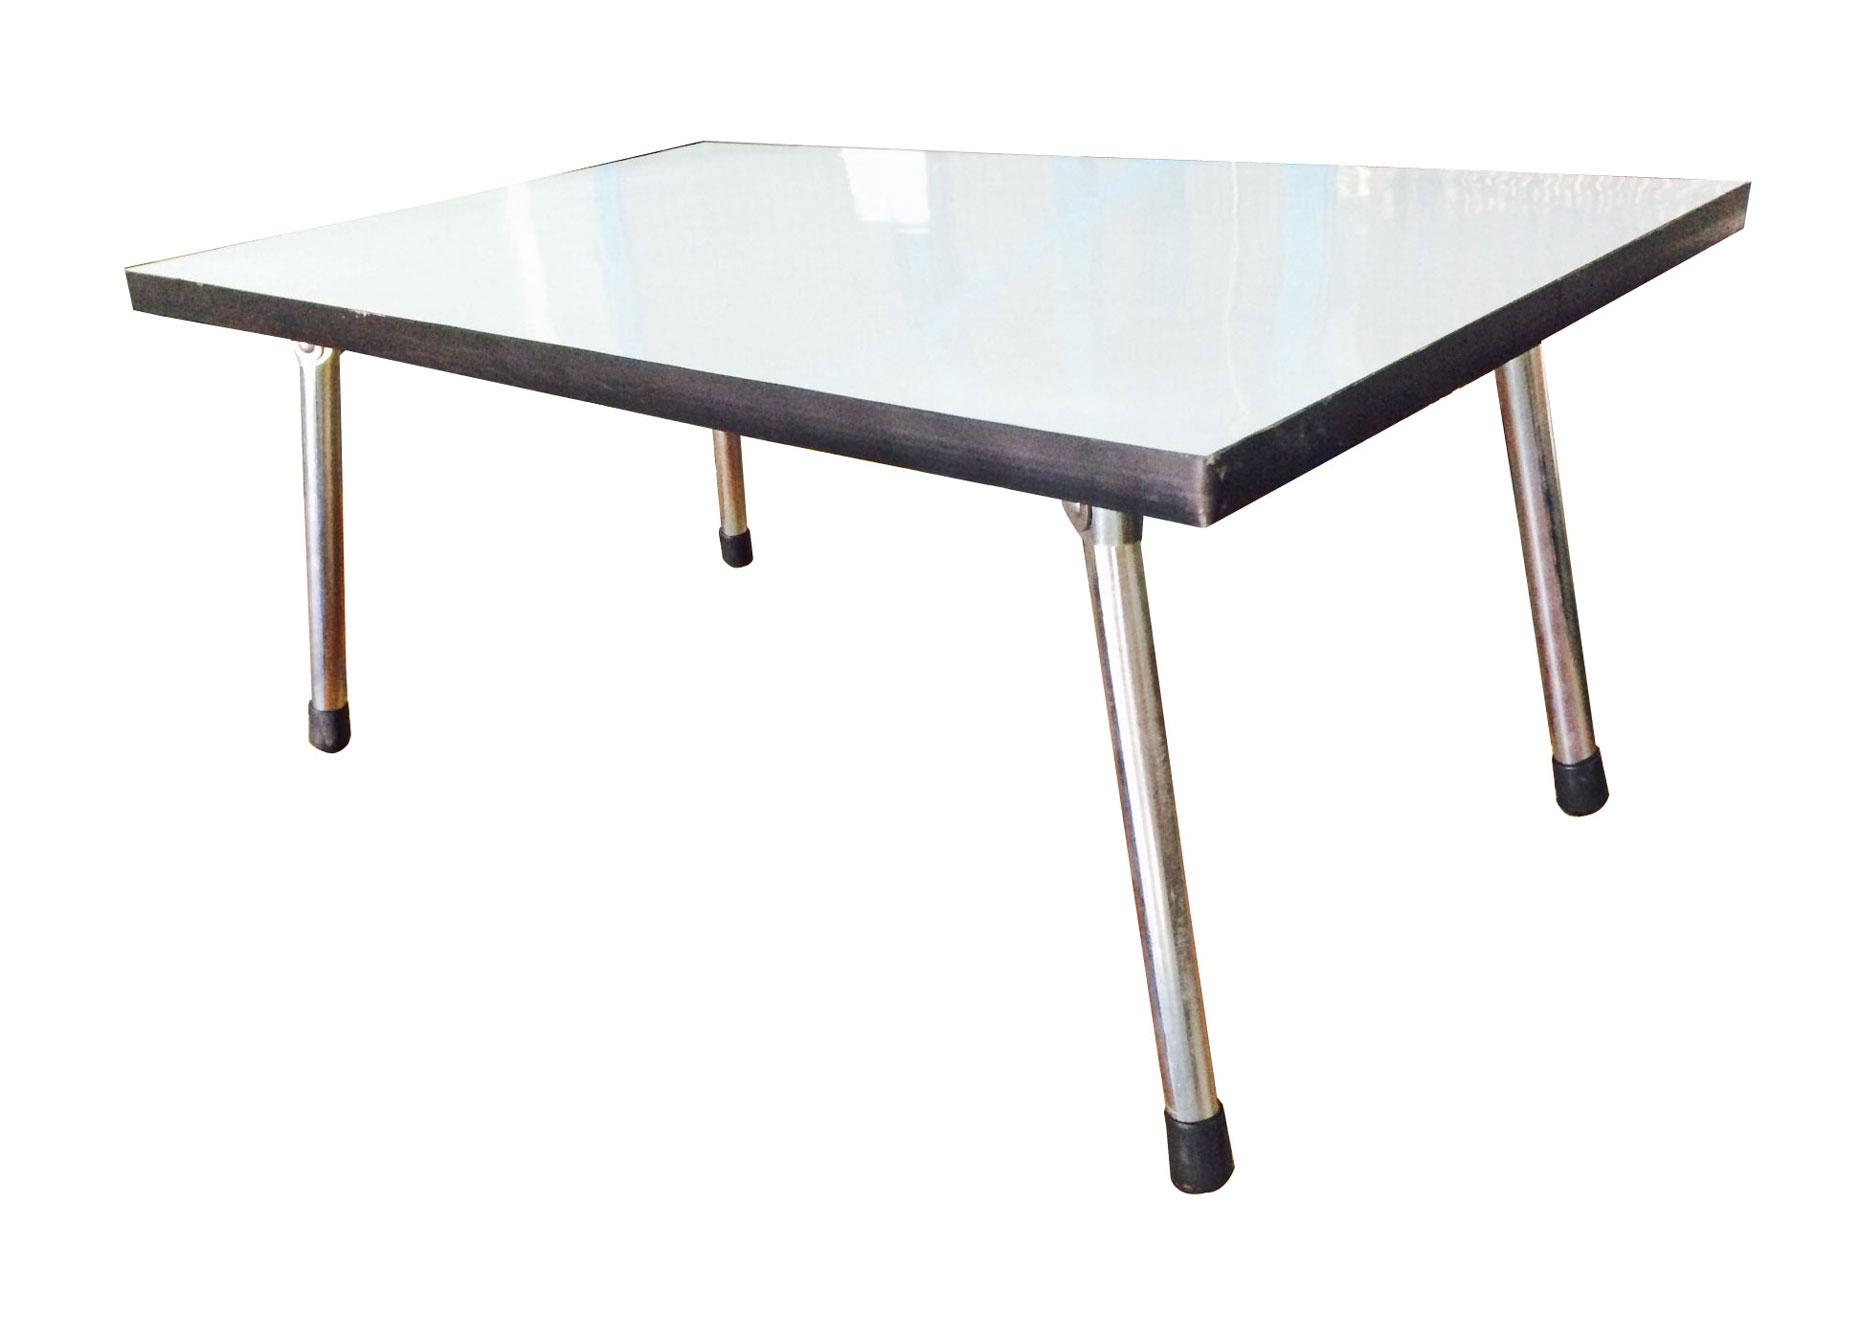 โต๊ะญี่ปุ่น สี่เหลียมผืนผ้า 76 ซม. หน้าโฟเมกา